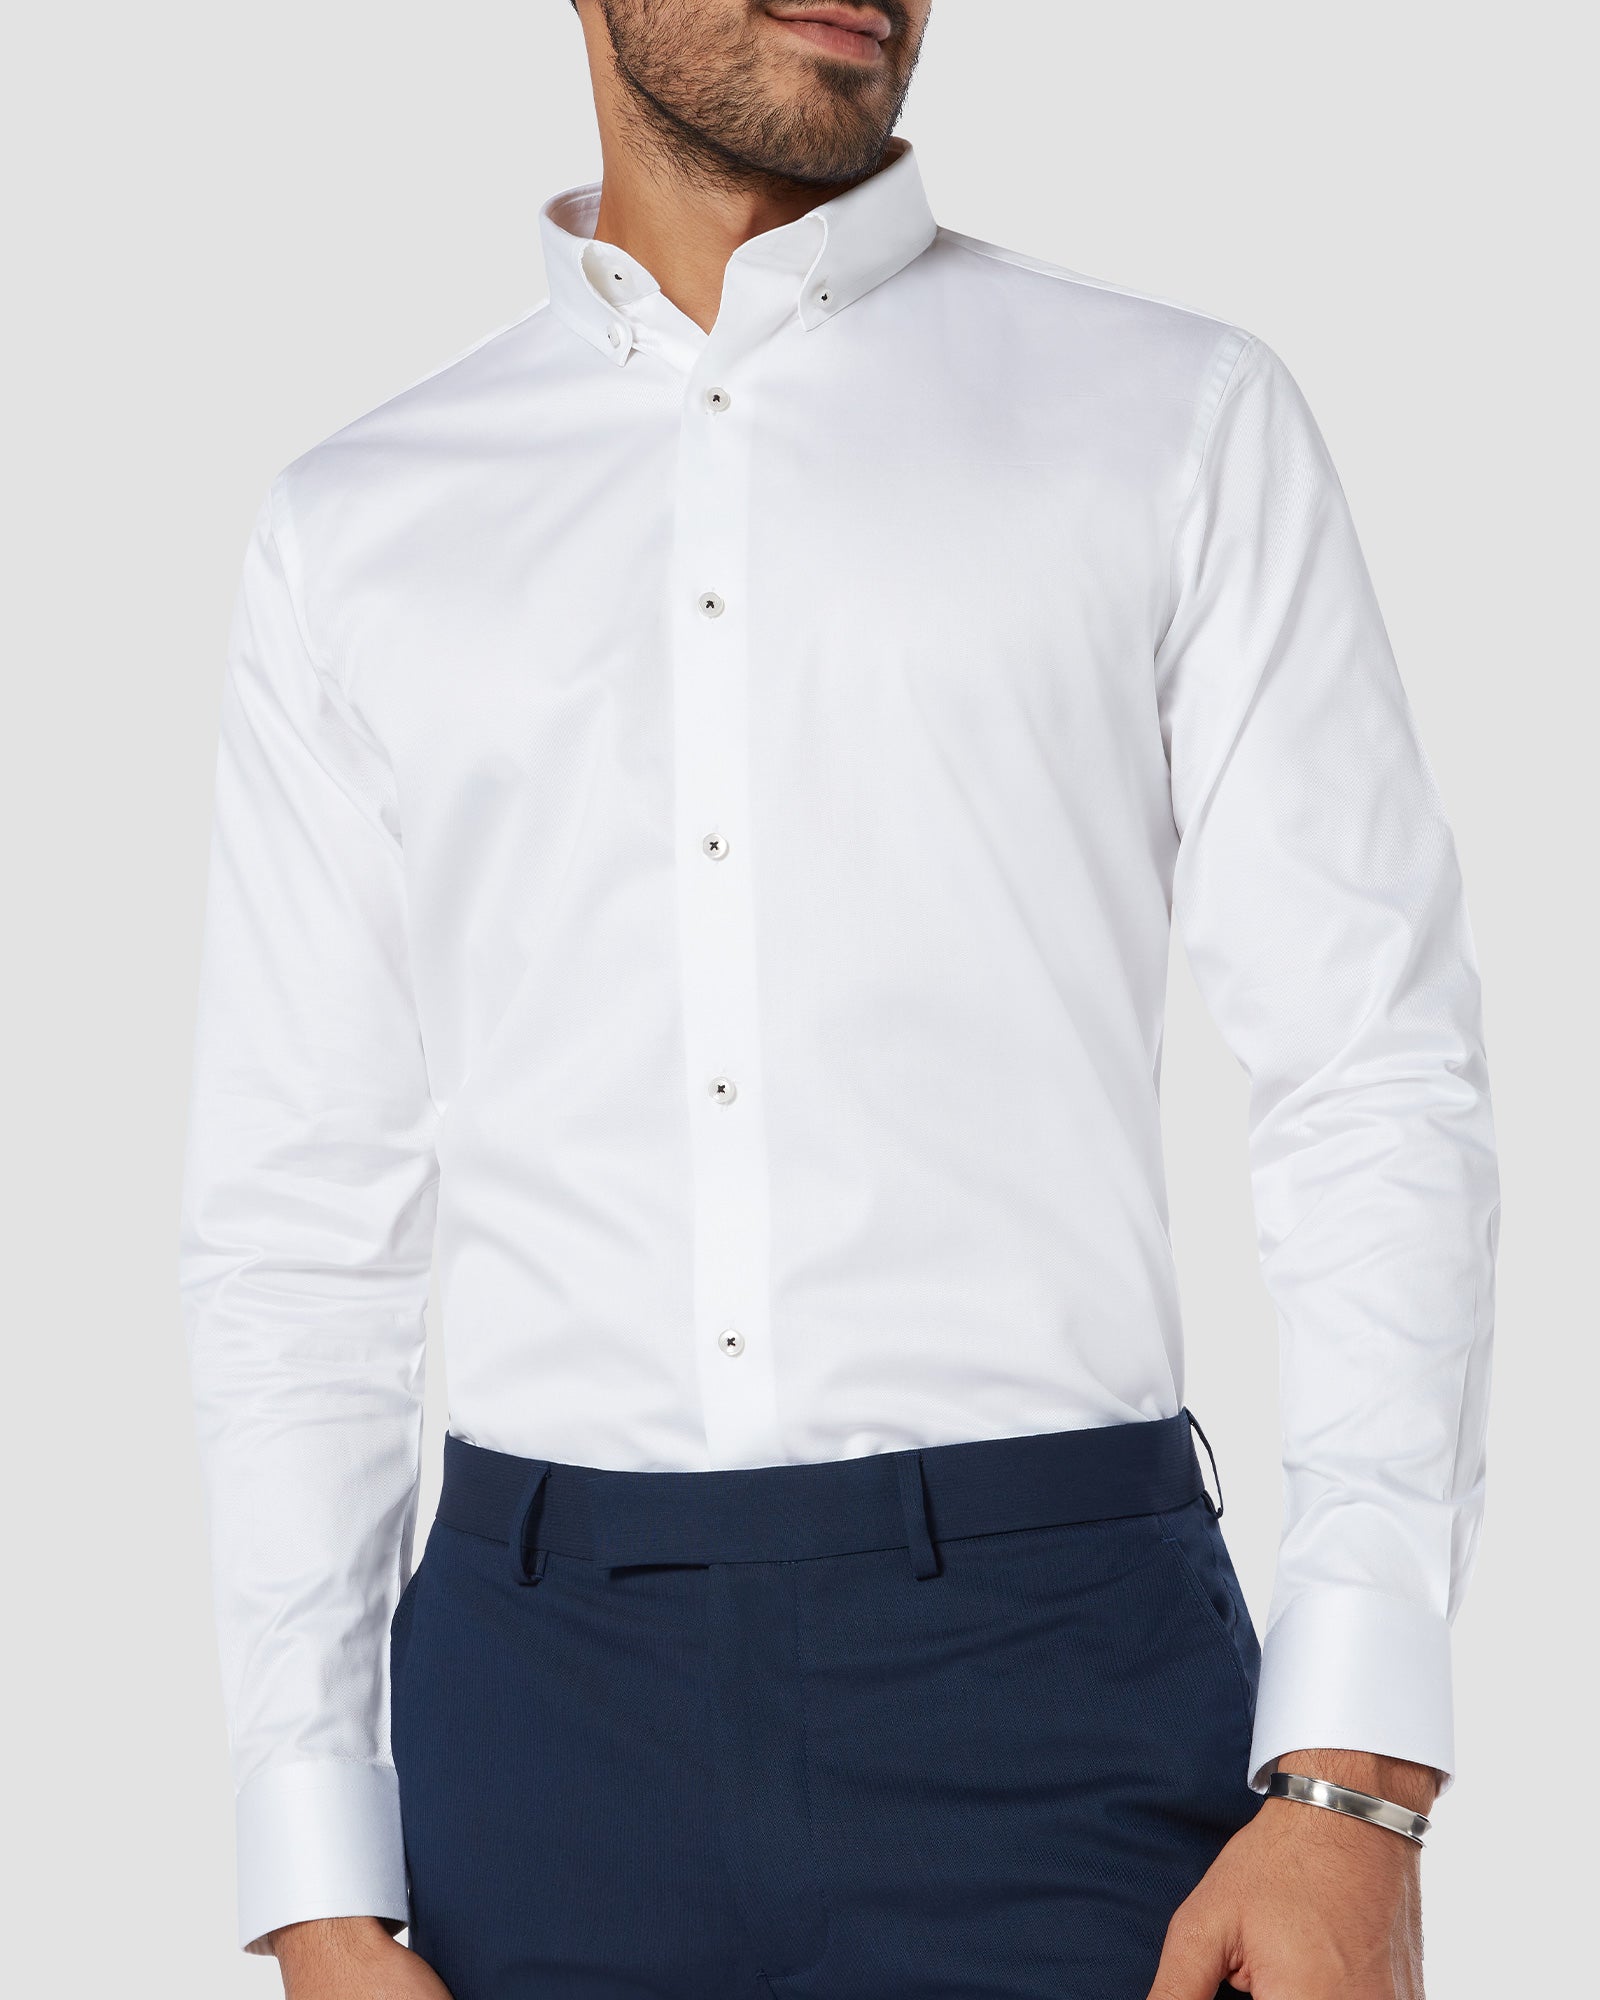 Soktas Twill Shirt - White